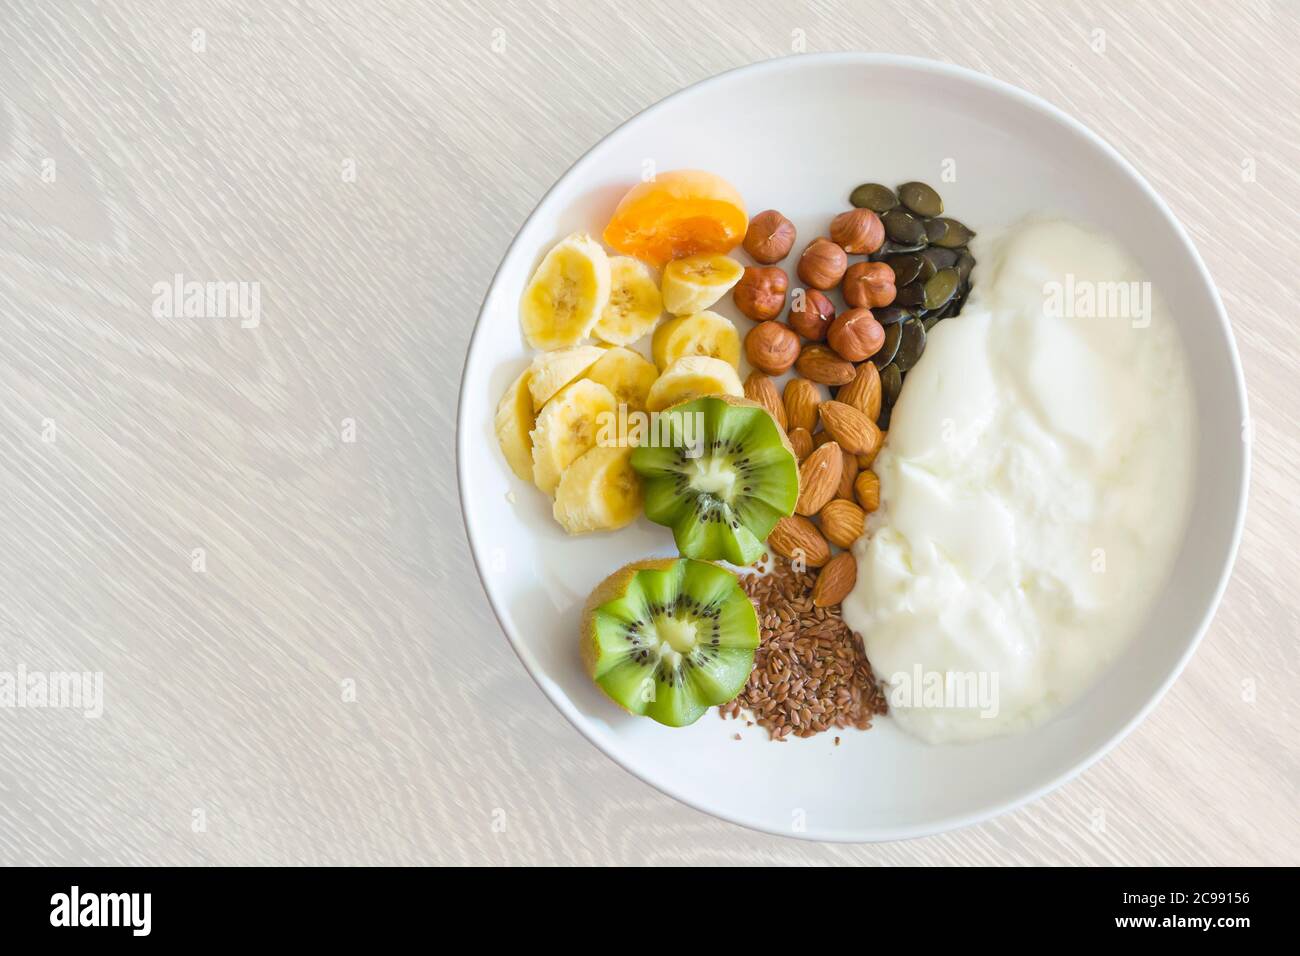 comida saludable - el desayuno consiste en yogur, nueces, semillas y frutas frescas Foto de stock